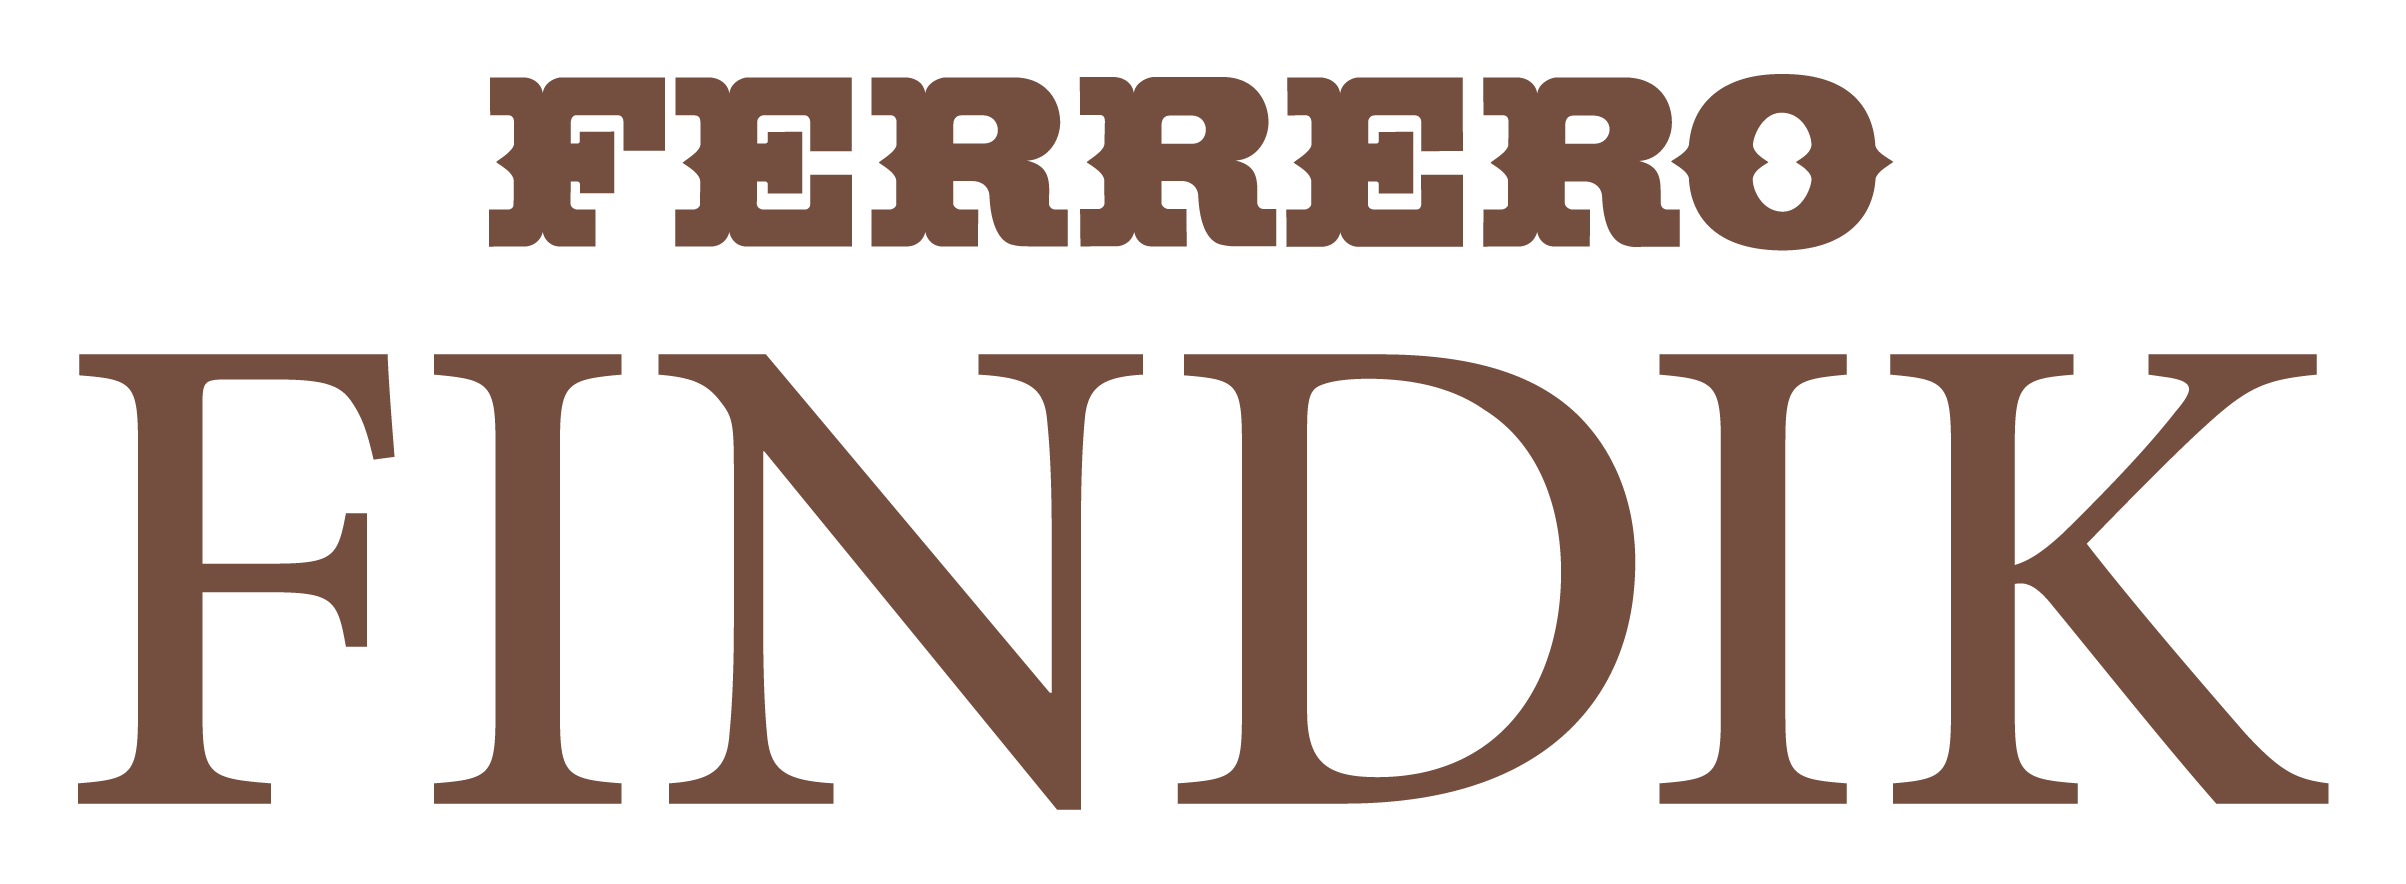 Ferrero-Findik-logo